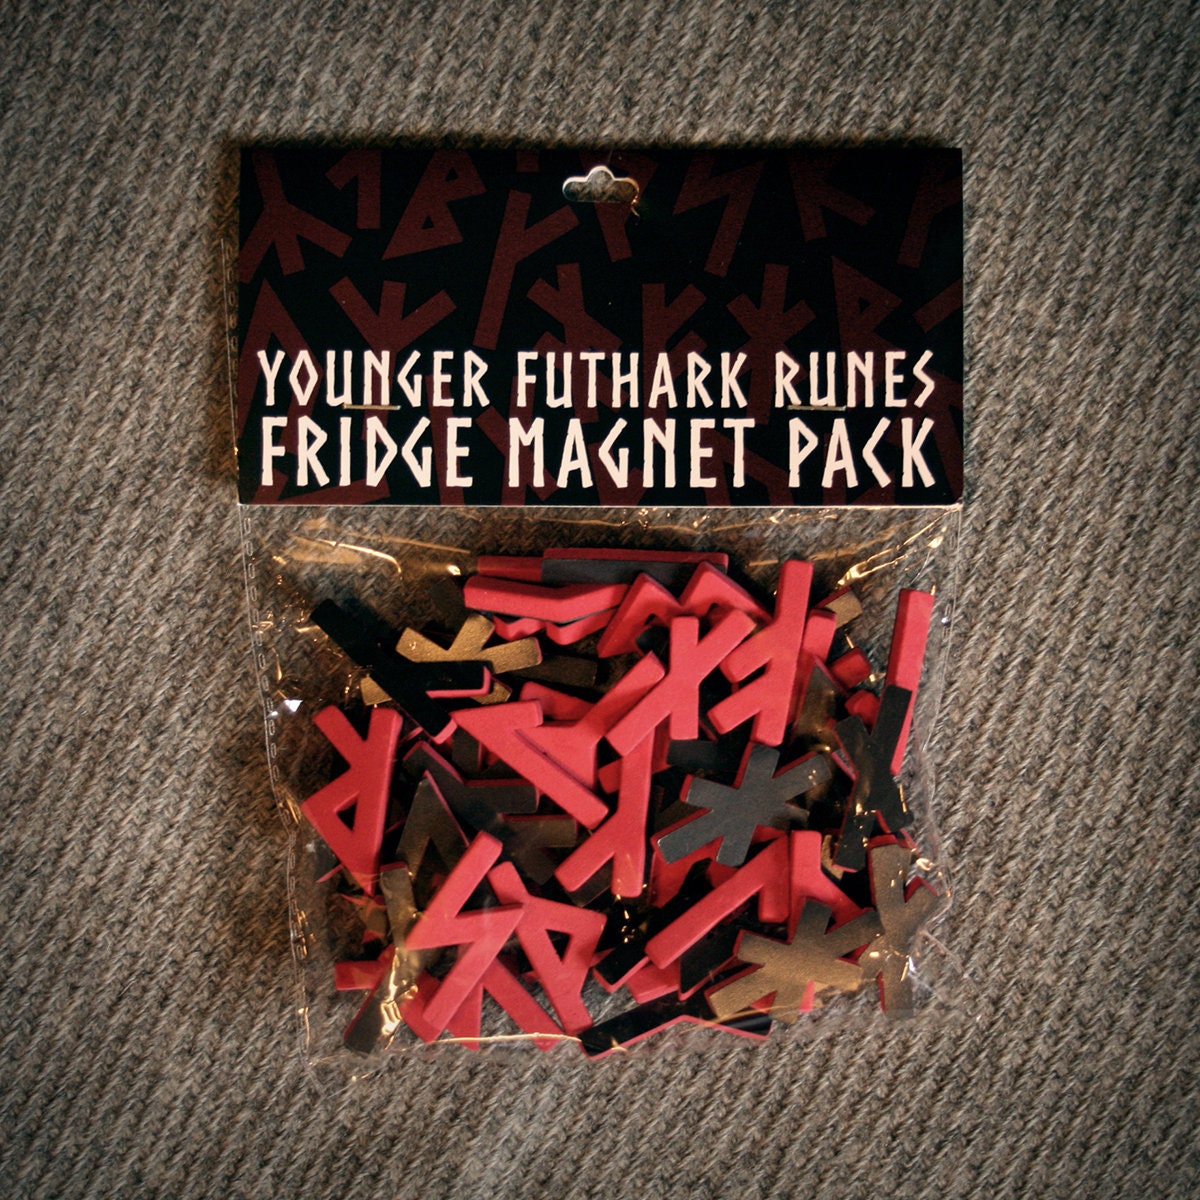 Younger Futhark Runes - fridge magnet pack